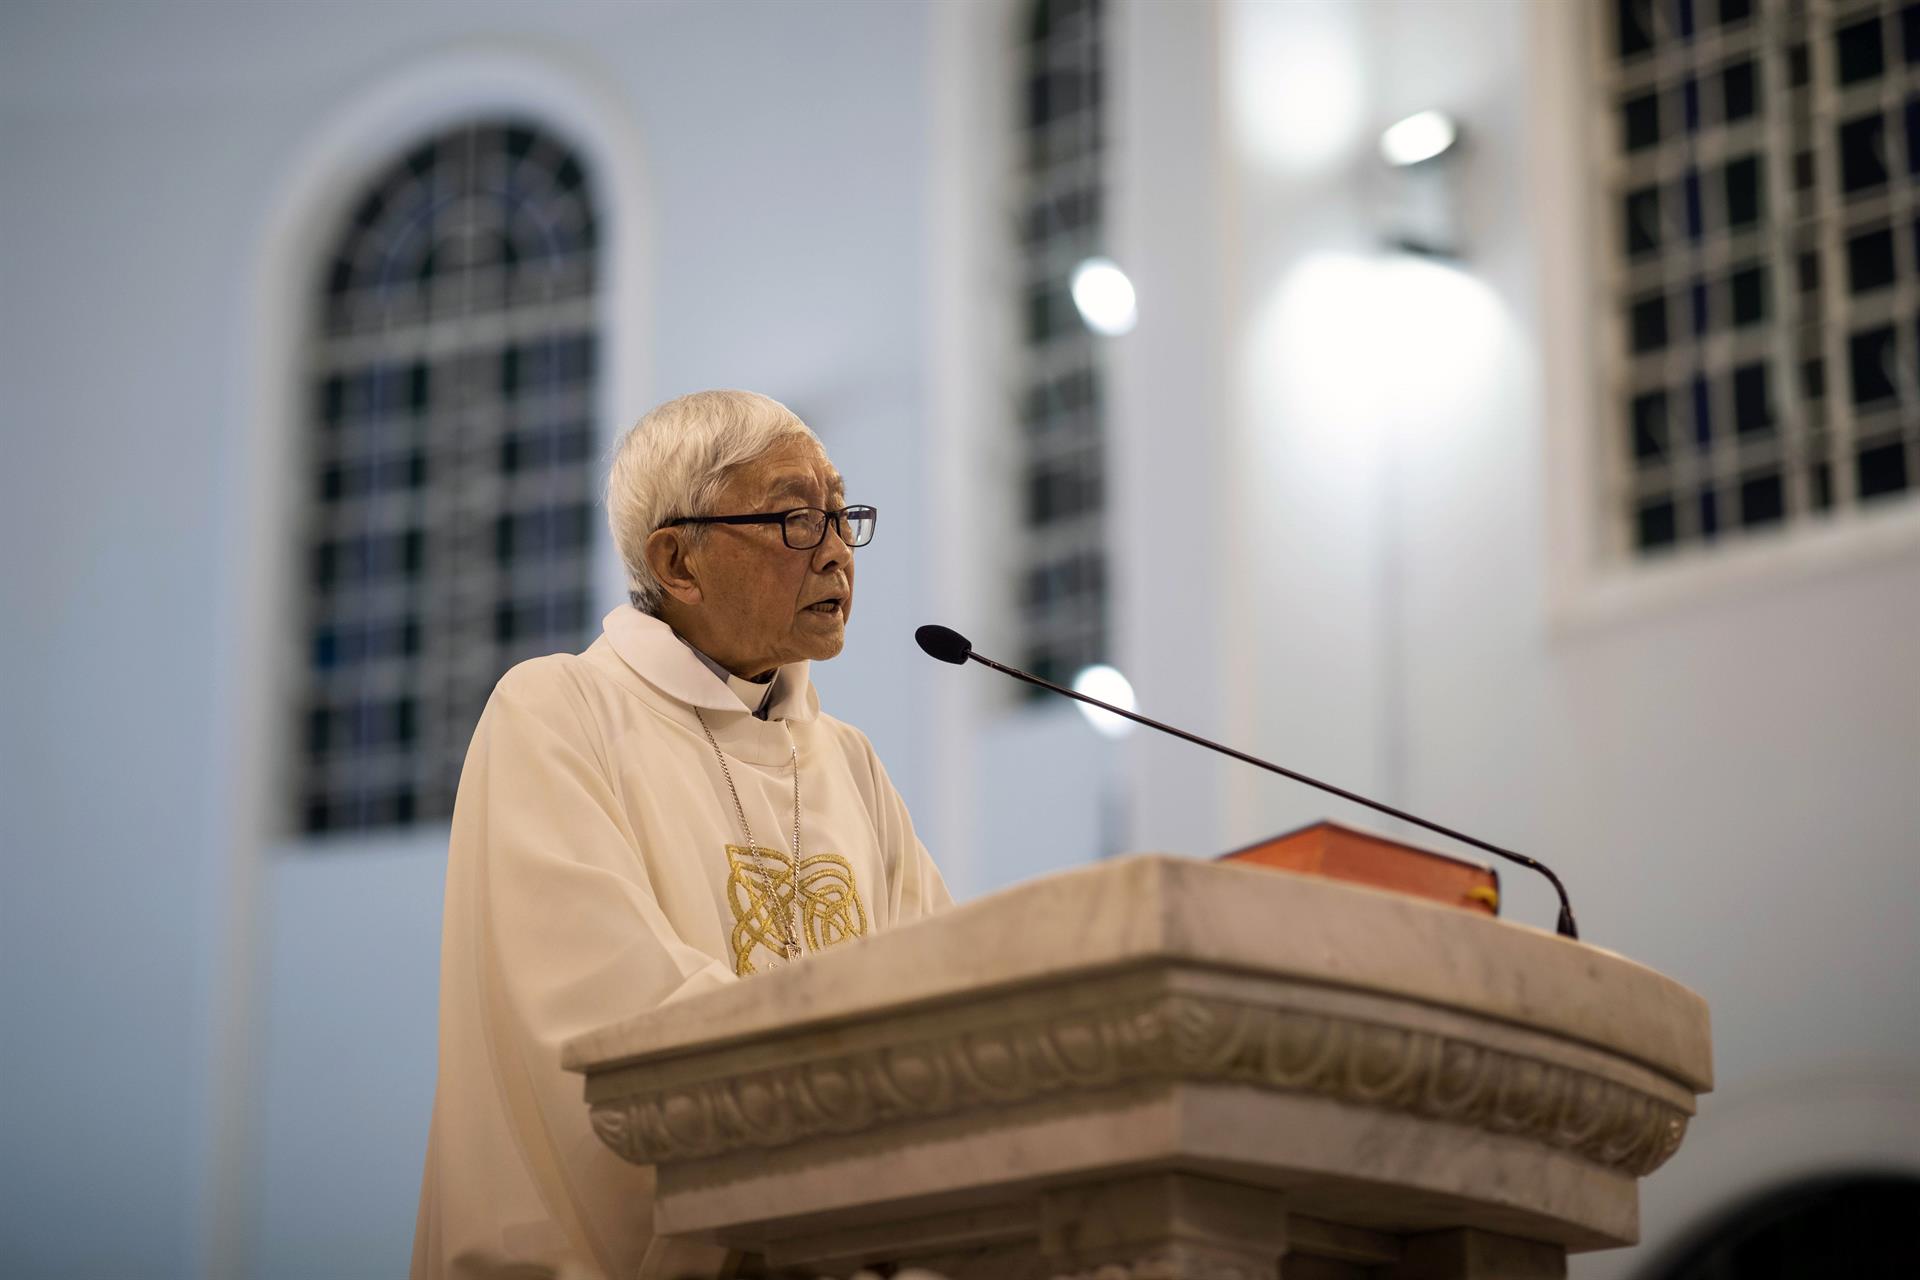 Diócesis de Hong Kong, “extremadamente” preocupada tras detención cardenal